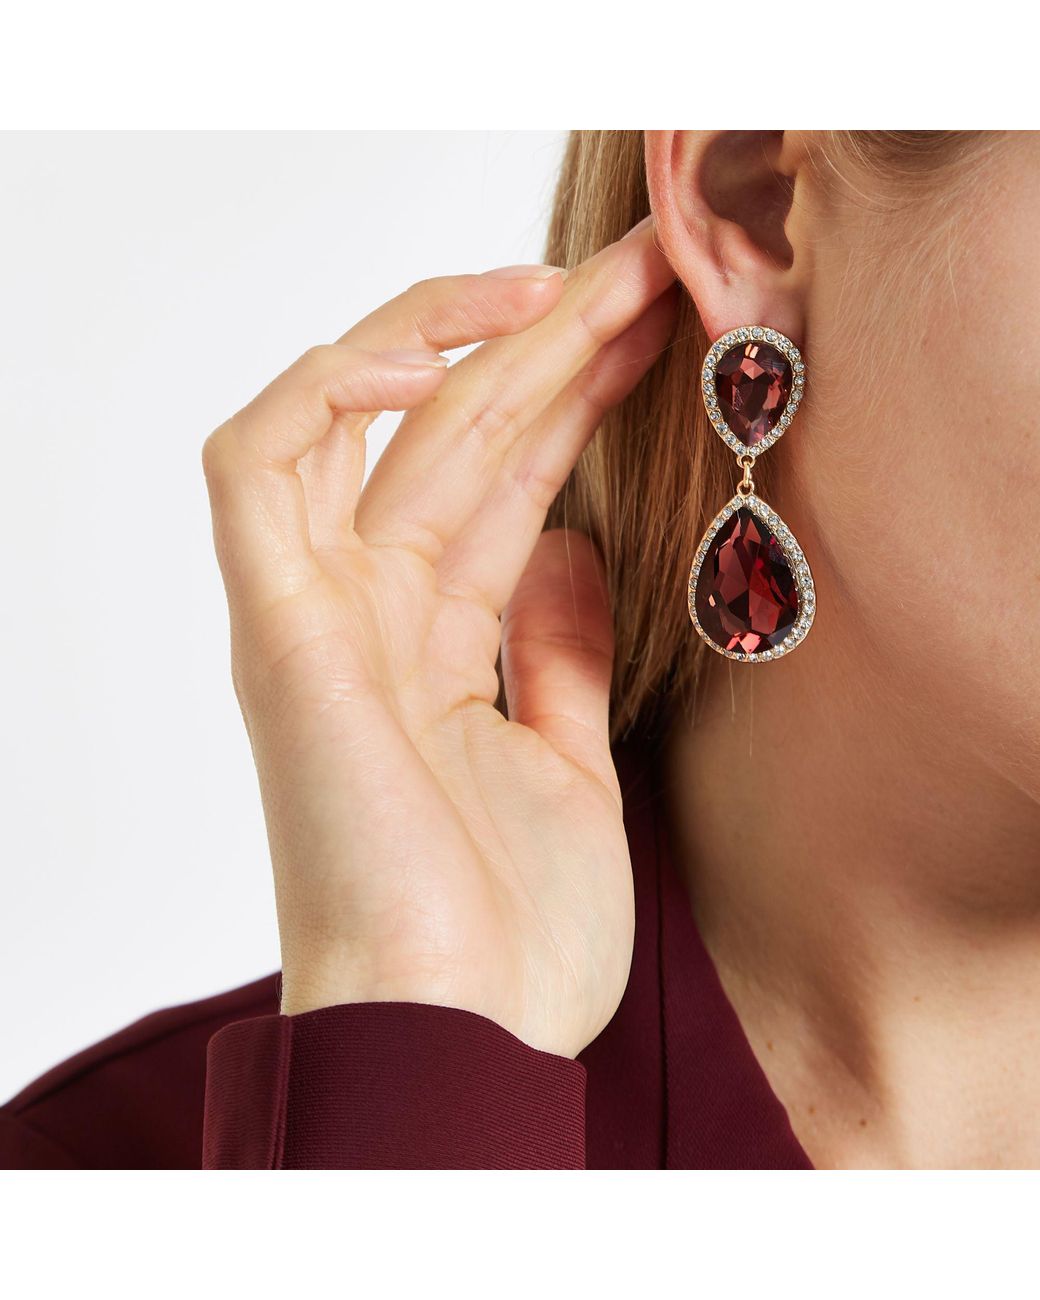 Buy Maroon Colour Mirror Earrings For Women | Chandabli Earrings |  Mina-Work Earrings For Stylish Women Online | Anuradha Art Jewellery